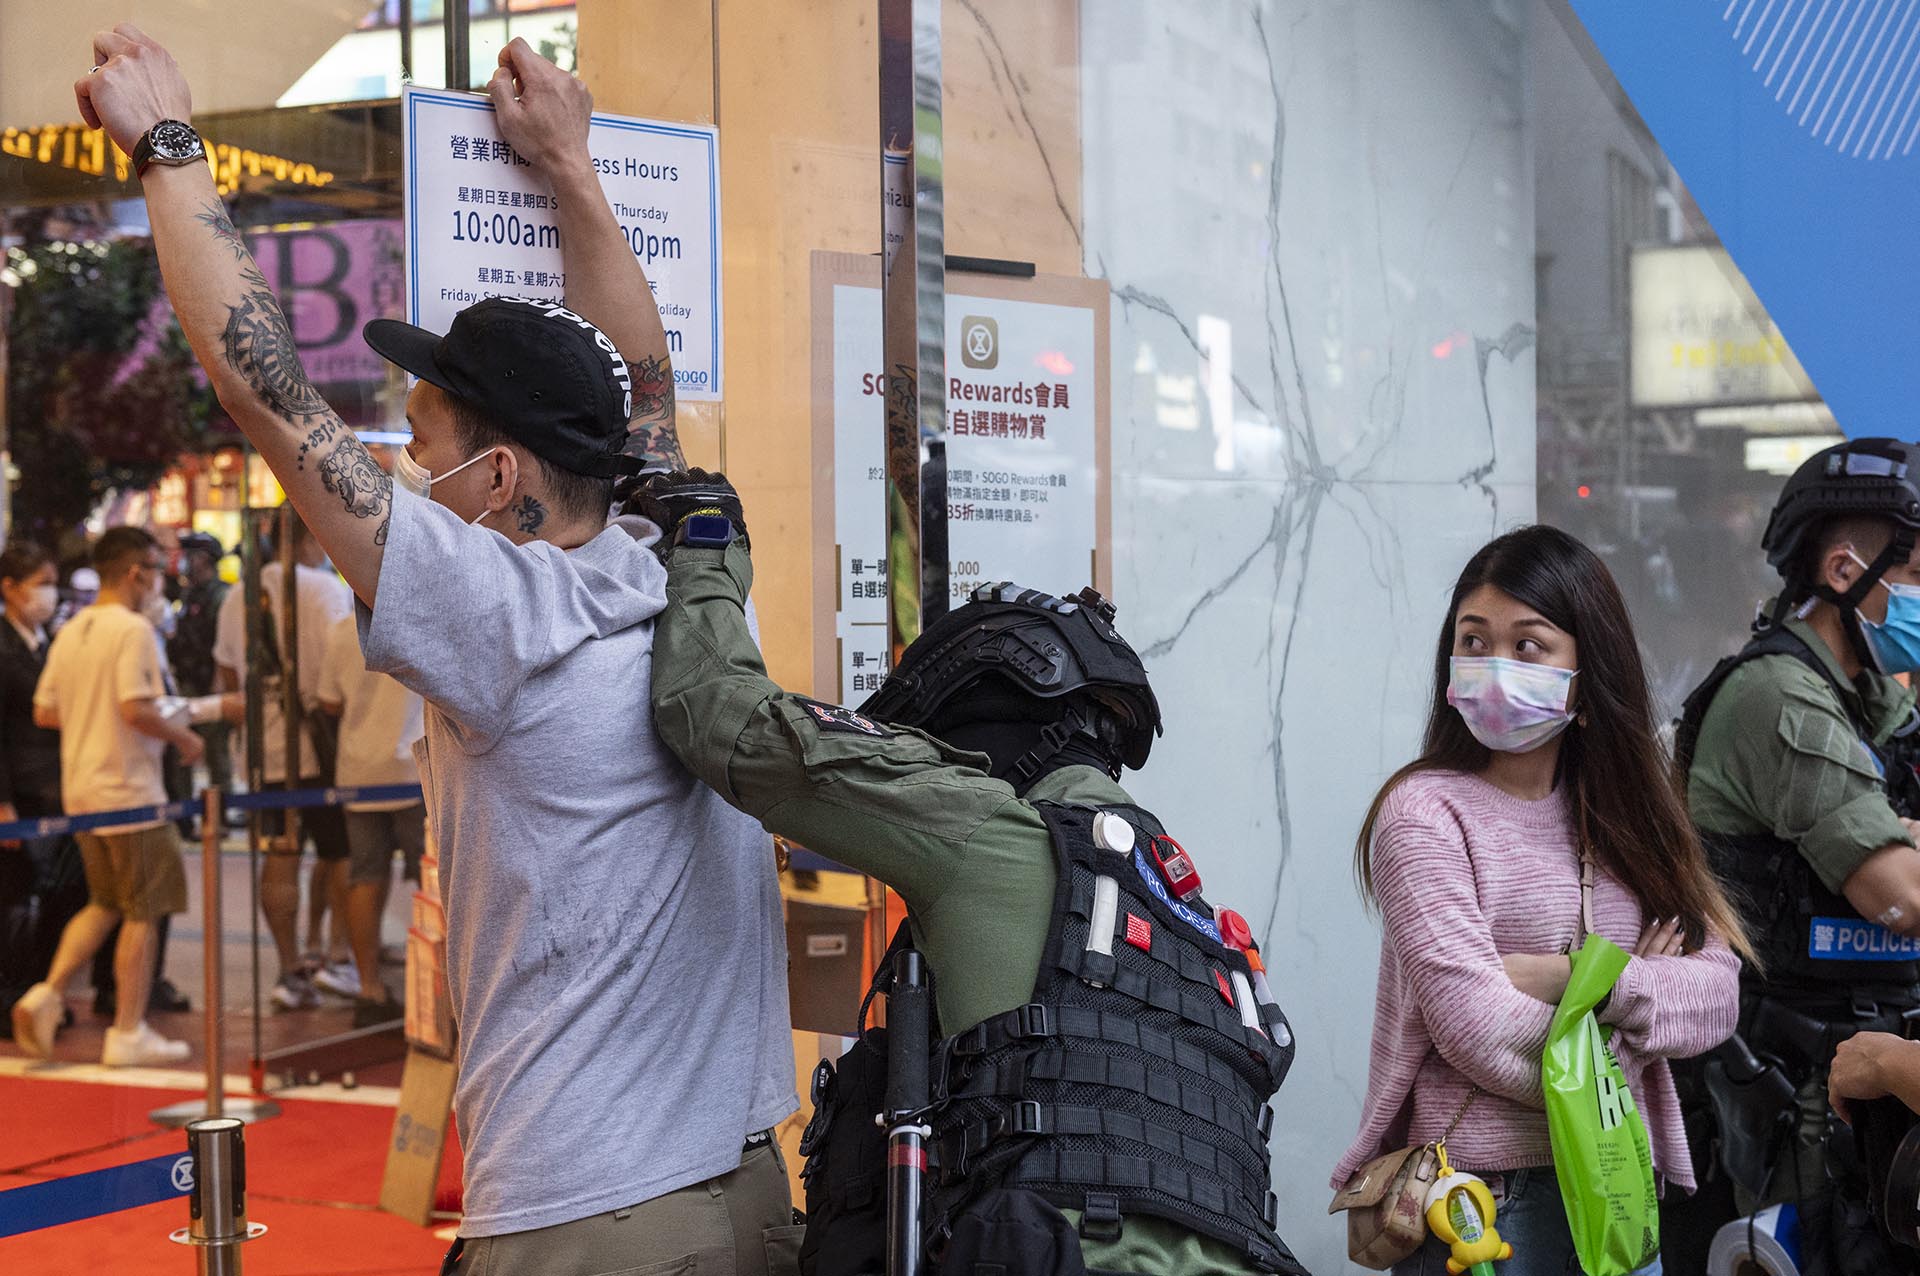 Öngyilkos merénylőt dicsőítettek a diákok, lecsapott a hongkongi rendőrség 